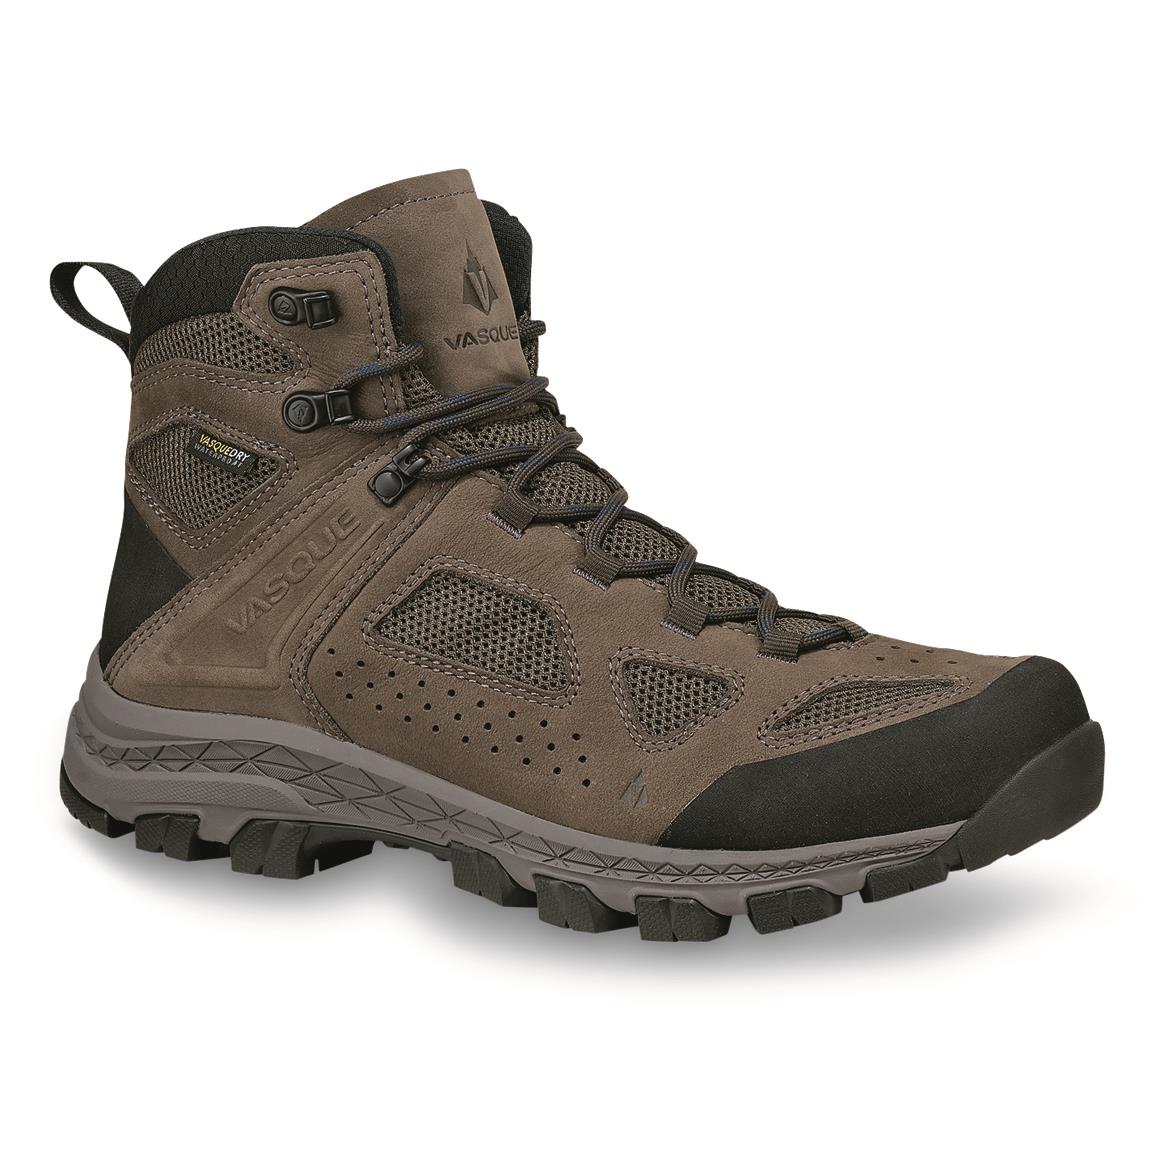 Vasque Men's Breeze Waterproof Hiking Boots, Pavement